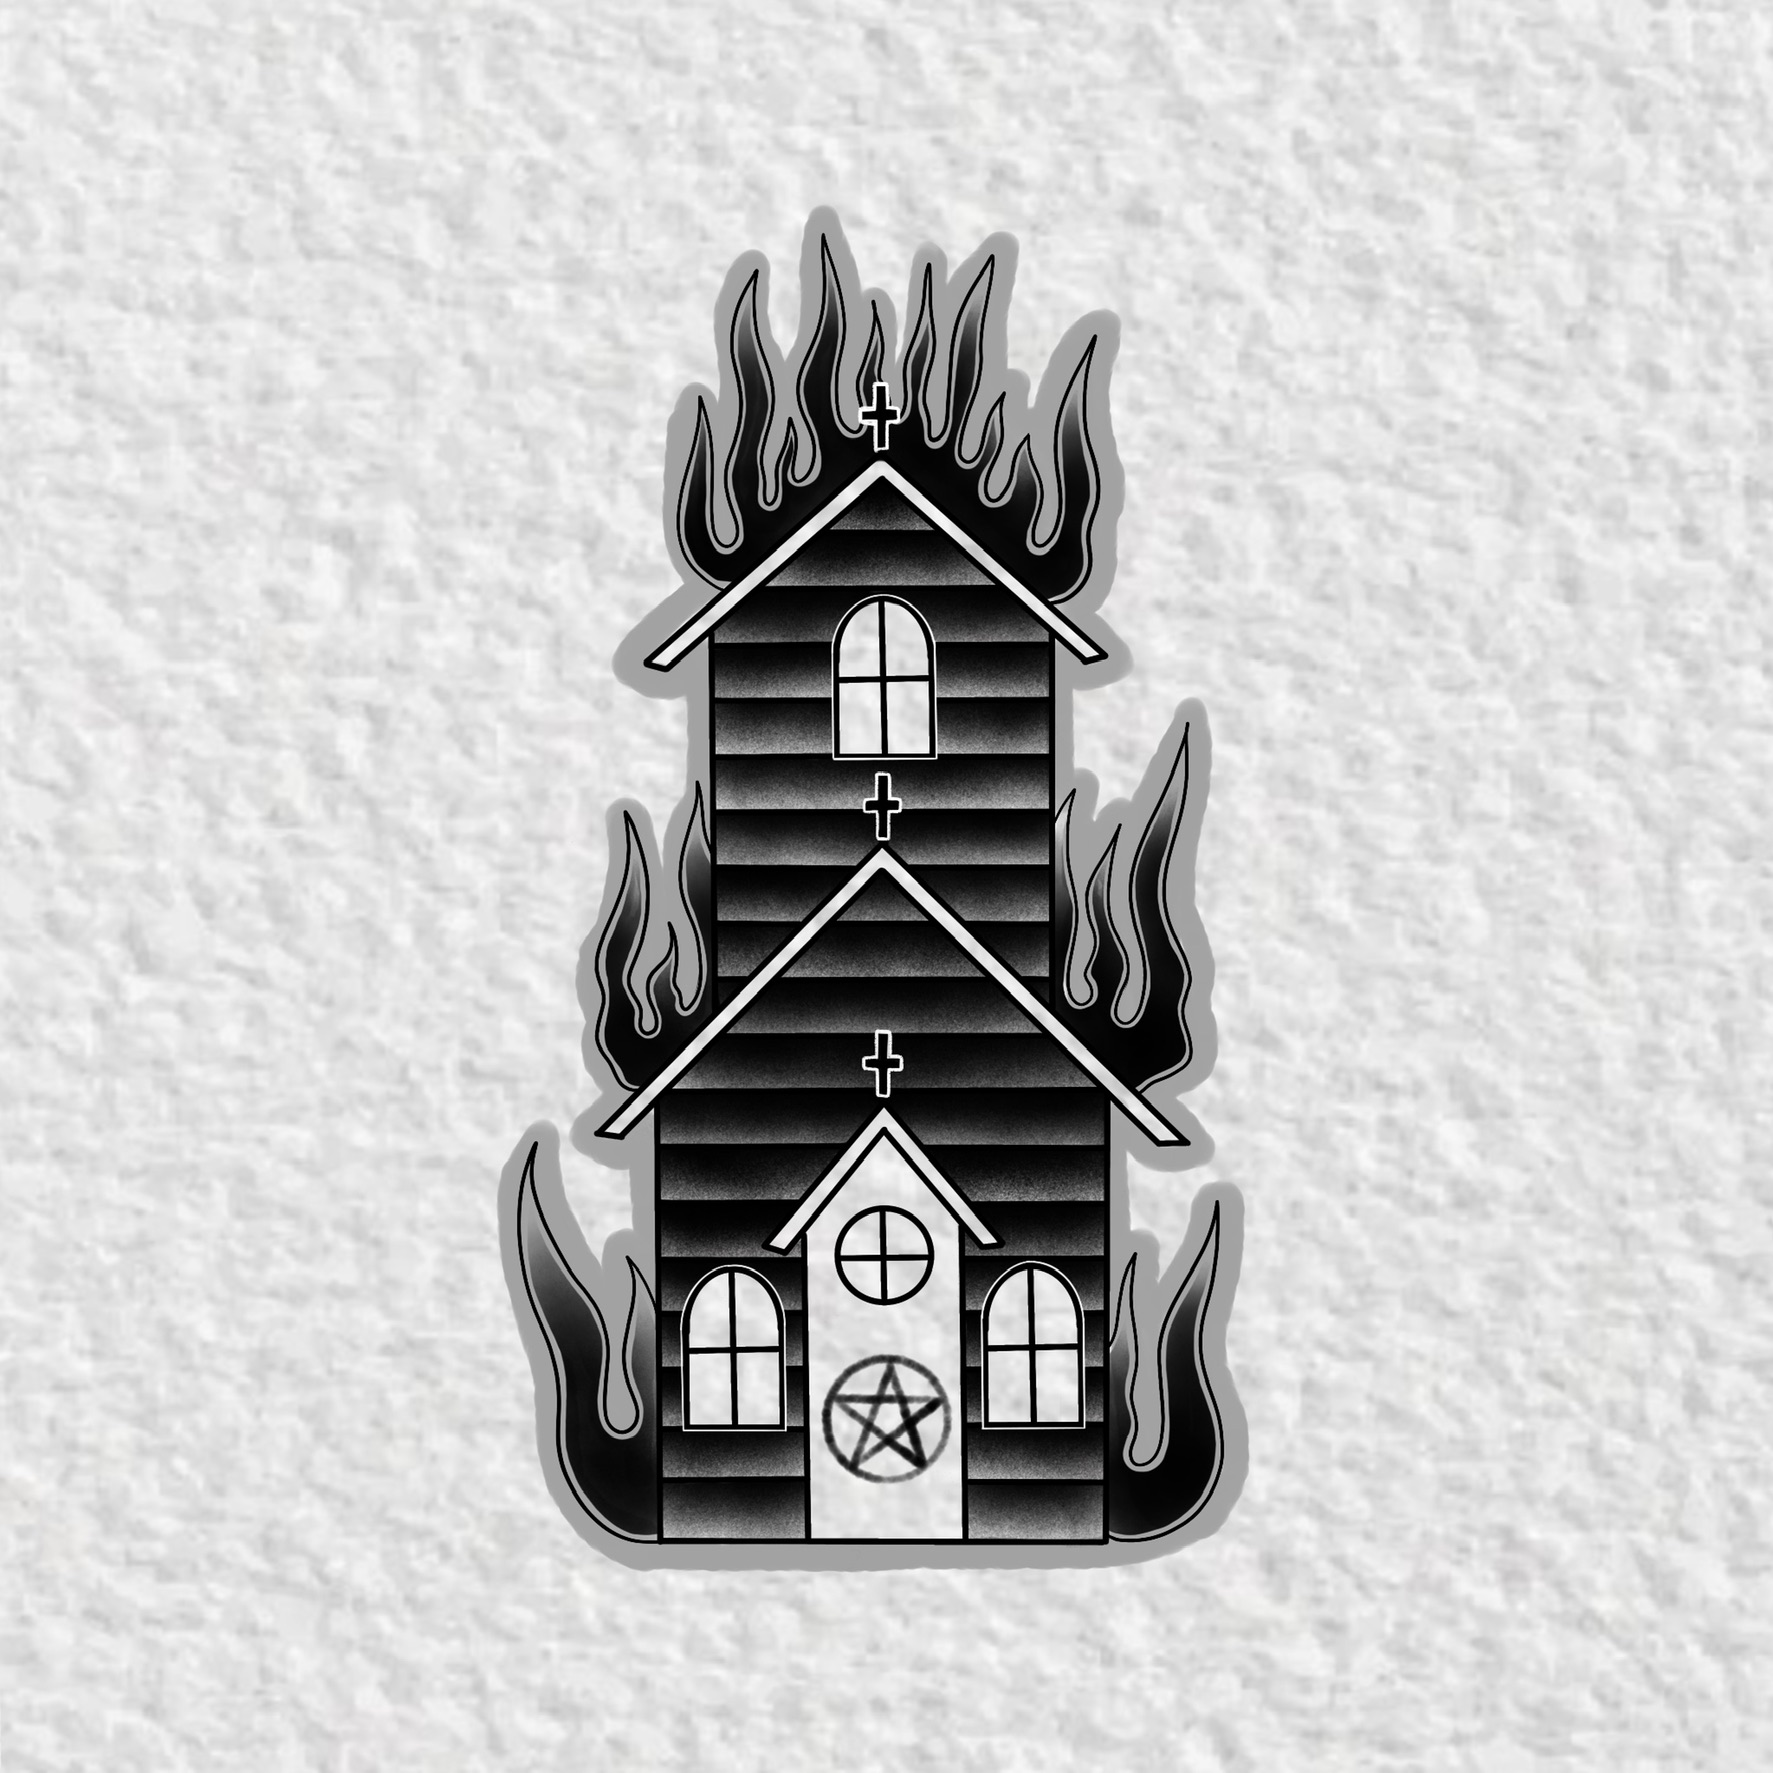 burning church